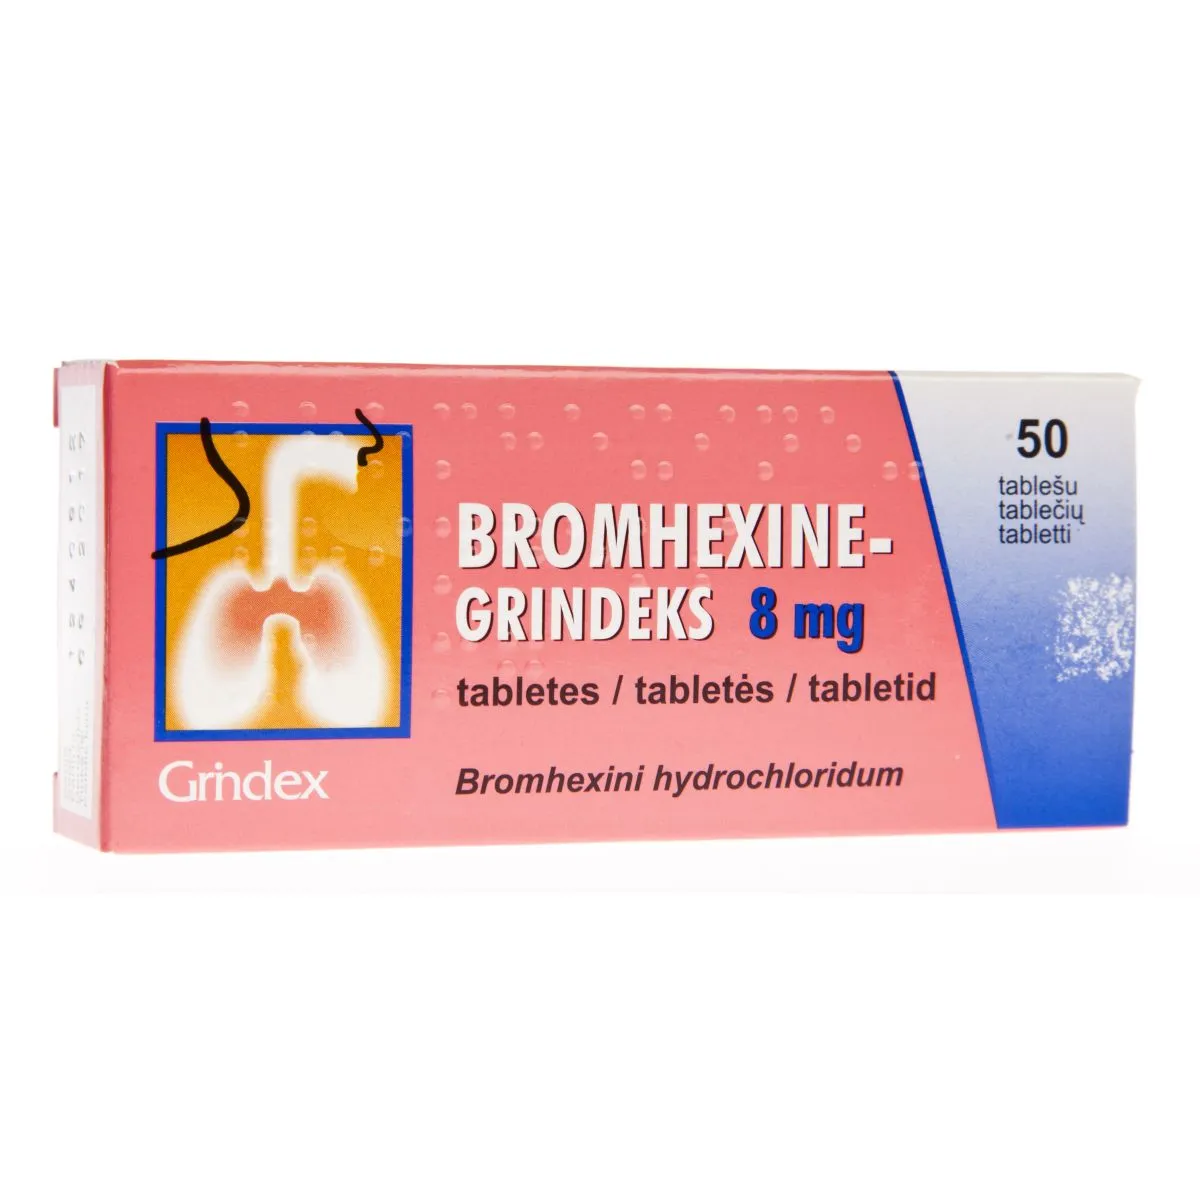 BROMHEXINE-GRINDEKS TBL 8MG N50